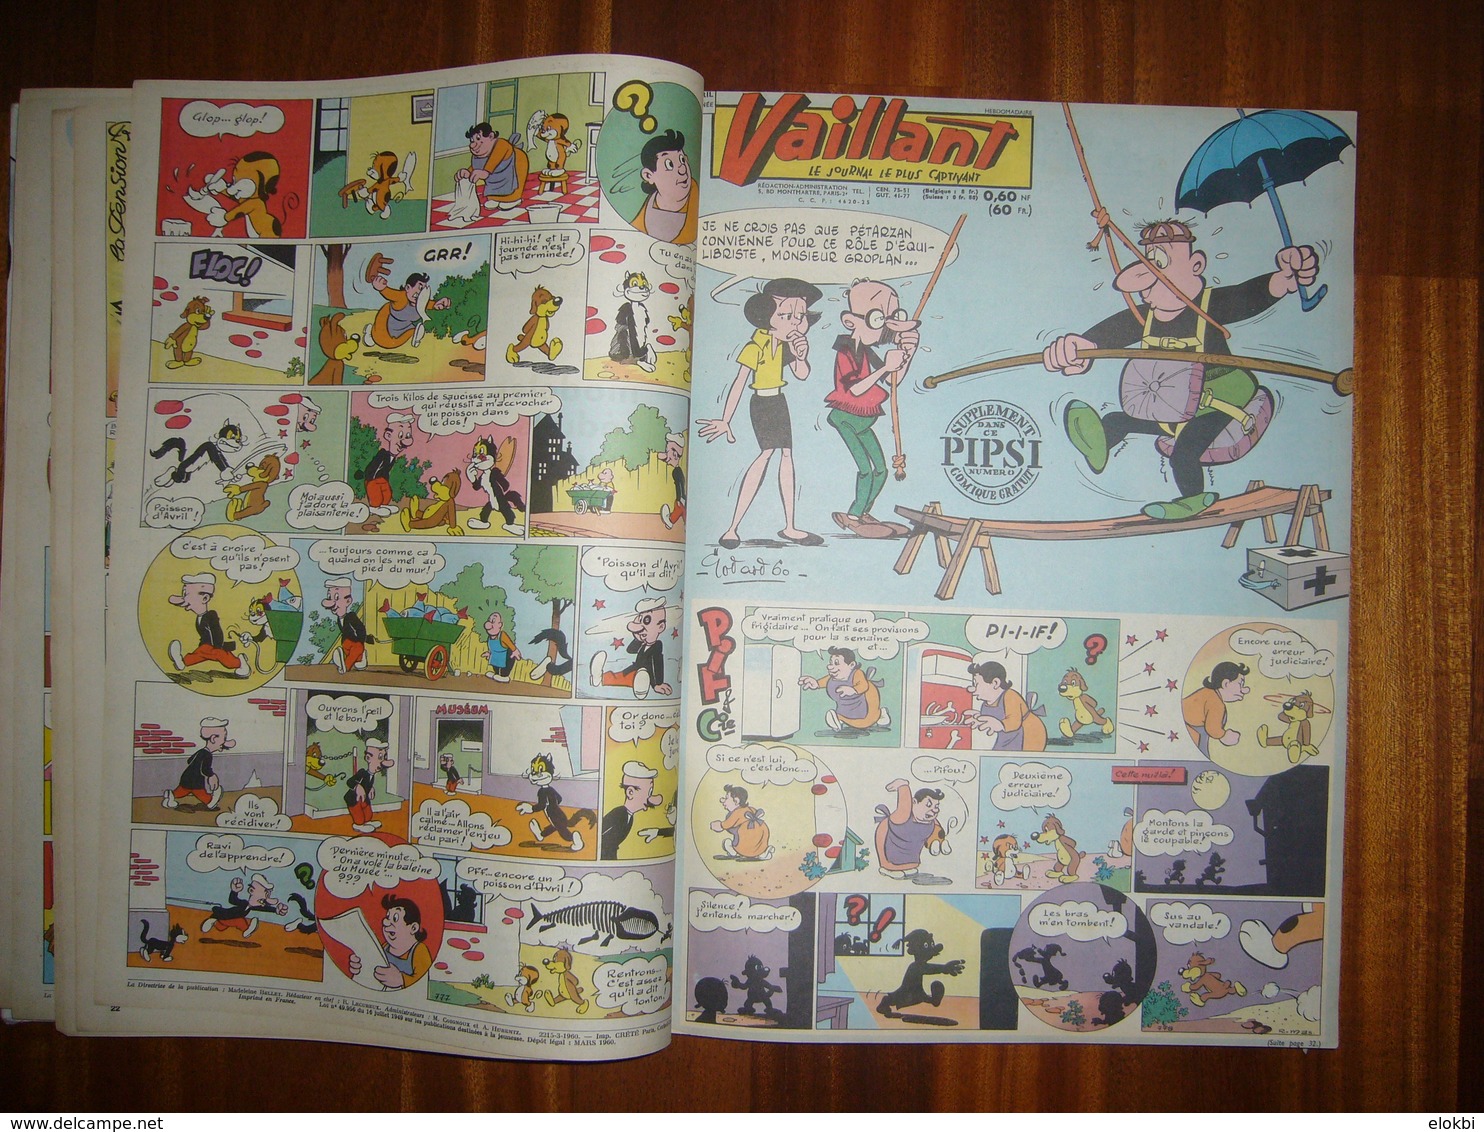 Album Vaillant n°2 [Série n°3] Revues n°772 à 884 incluses de l'année 1960 -Voir description détaillée